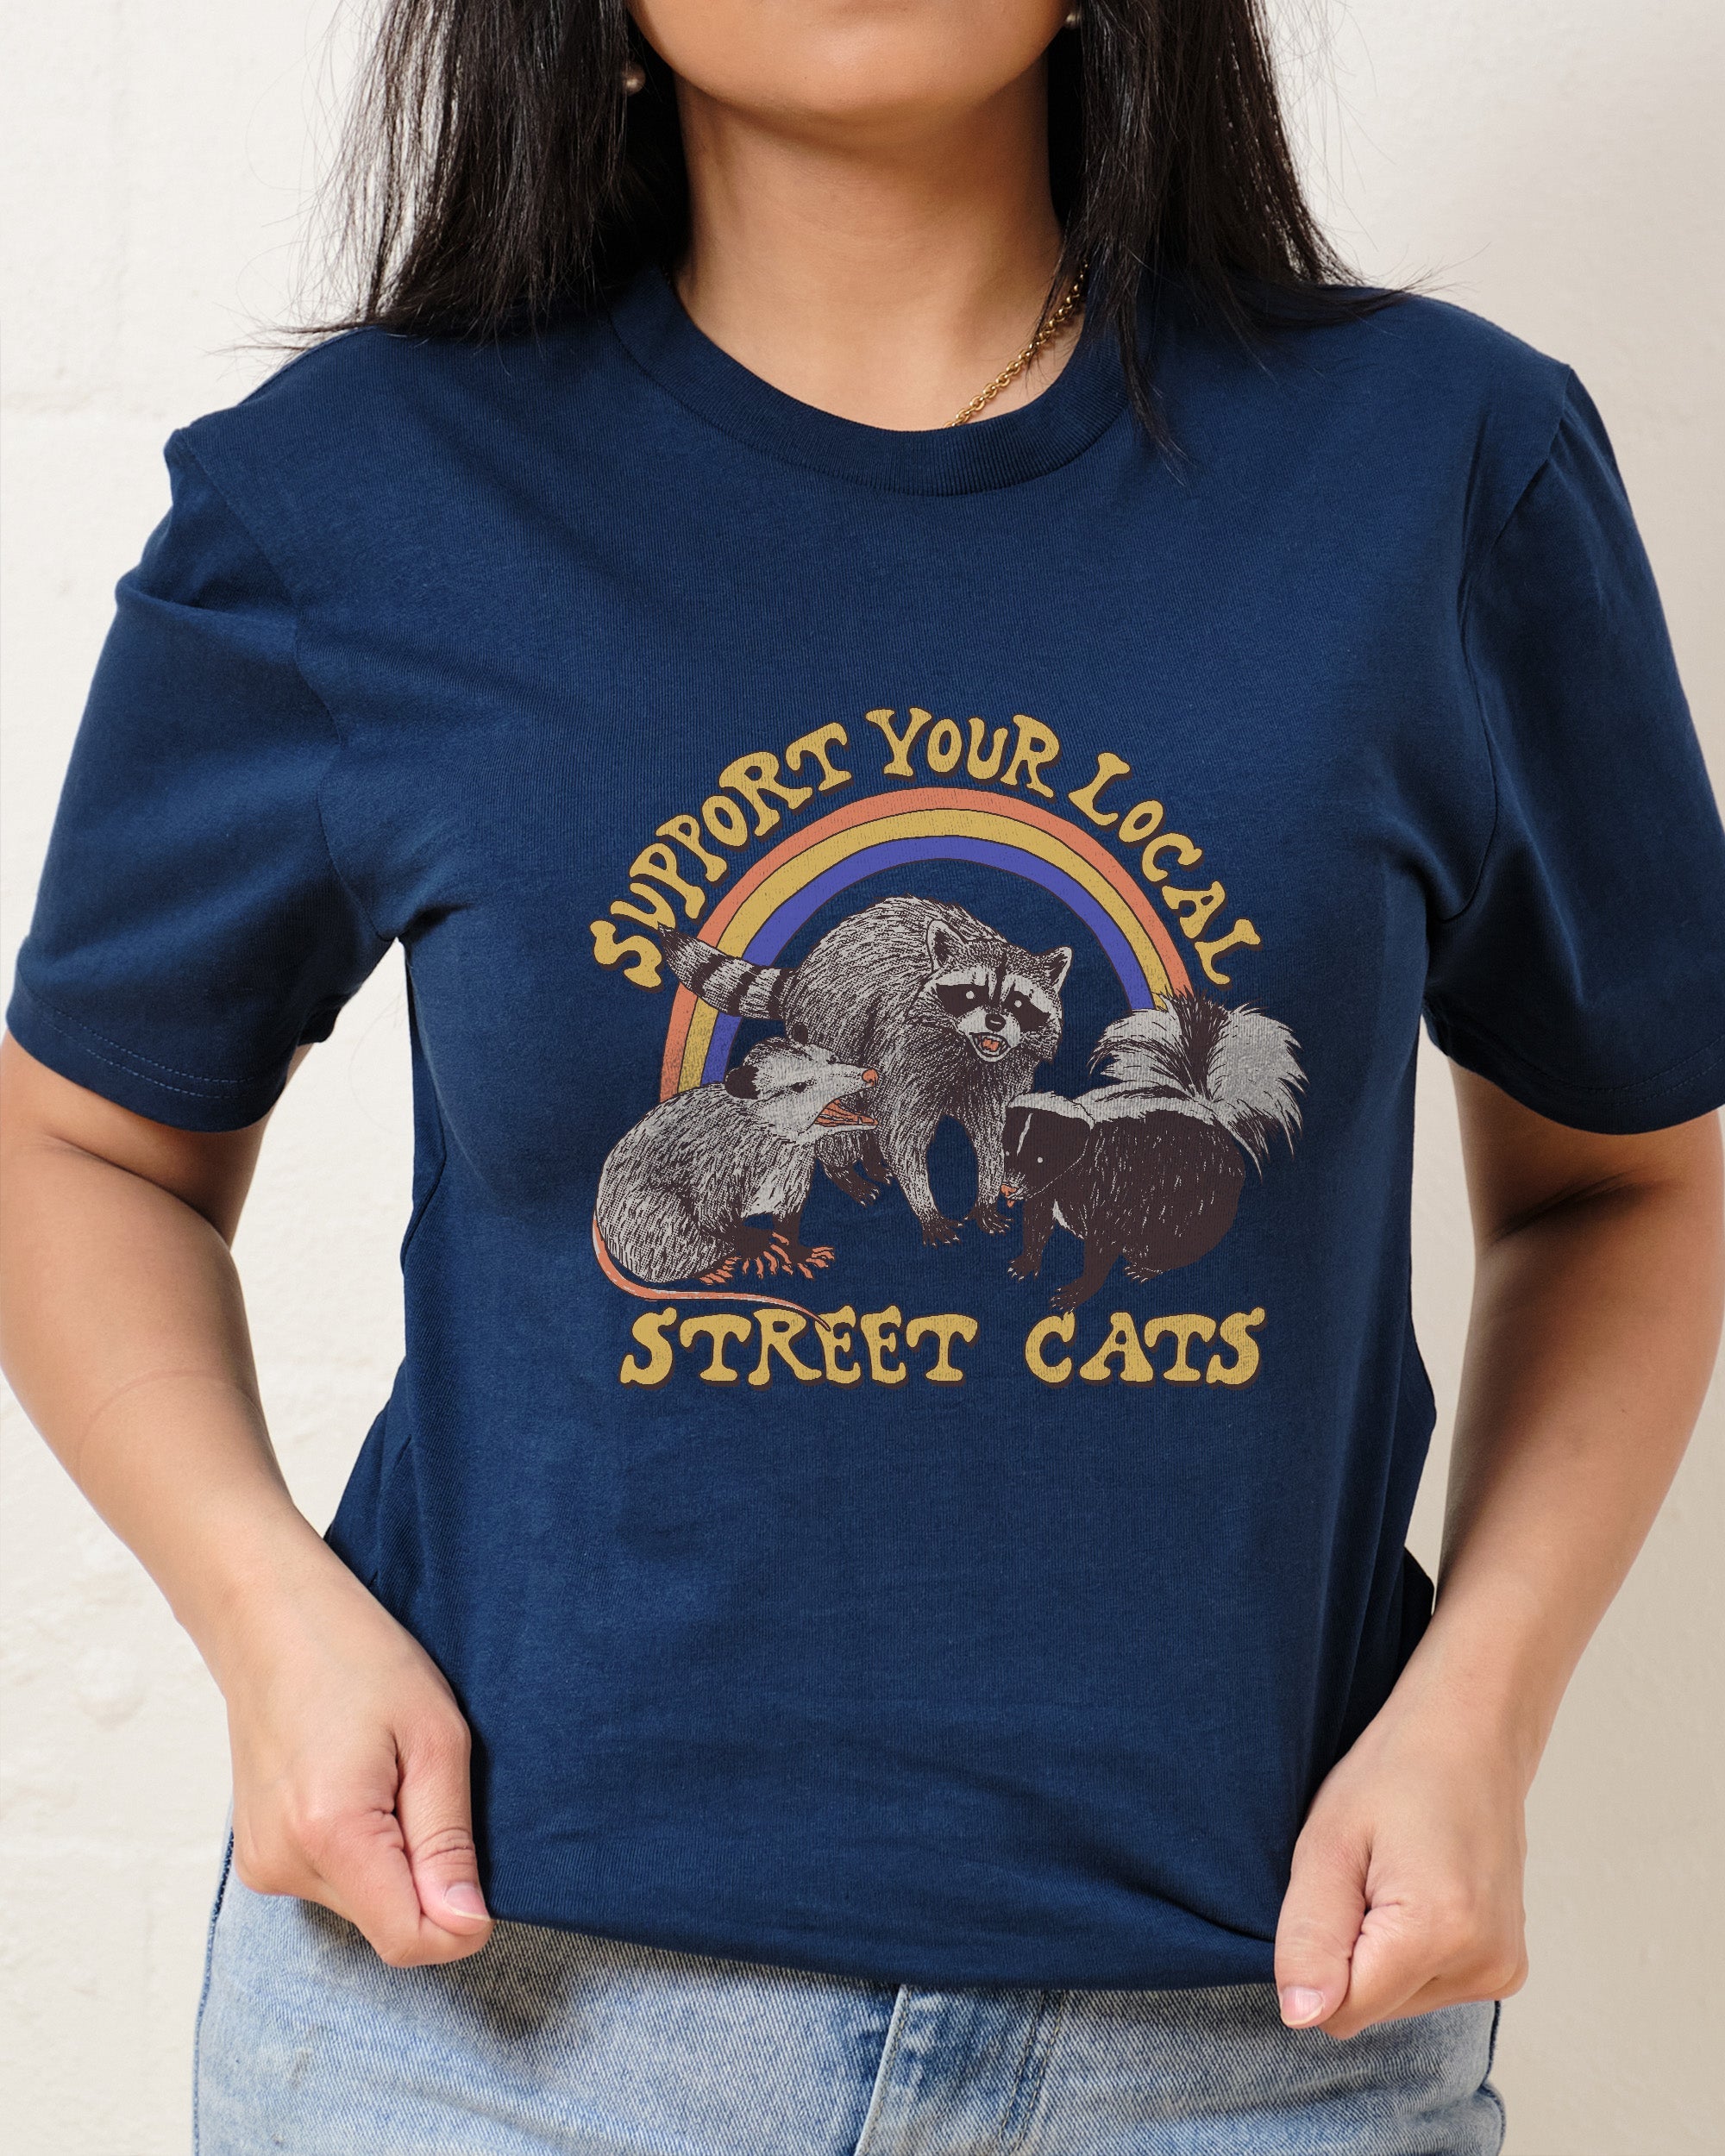 Street Cats T-Shirt Australia Online Navy